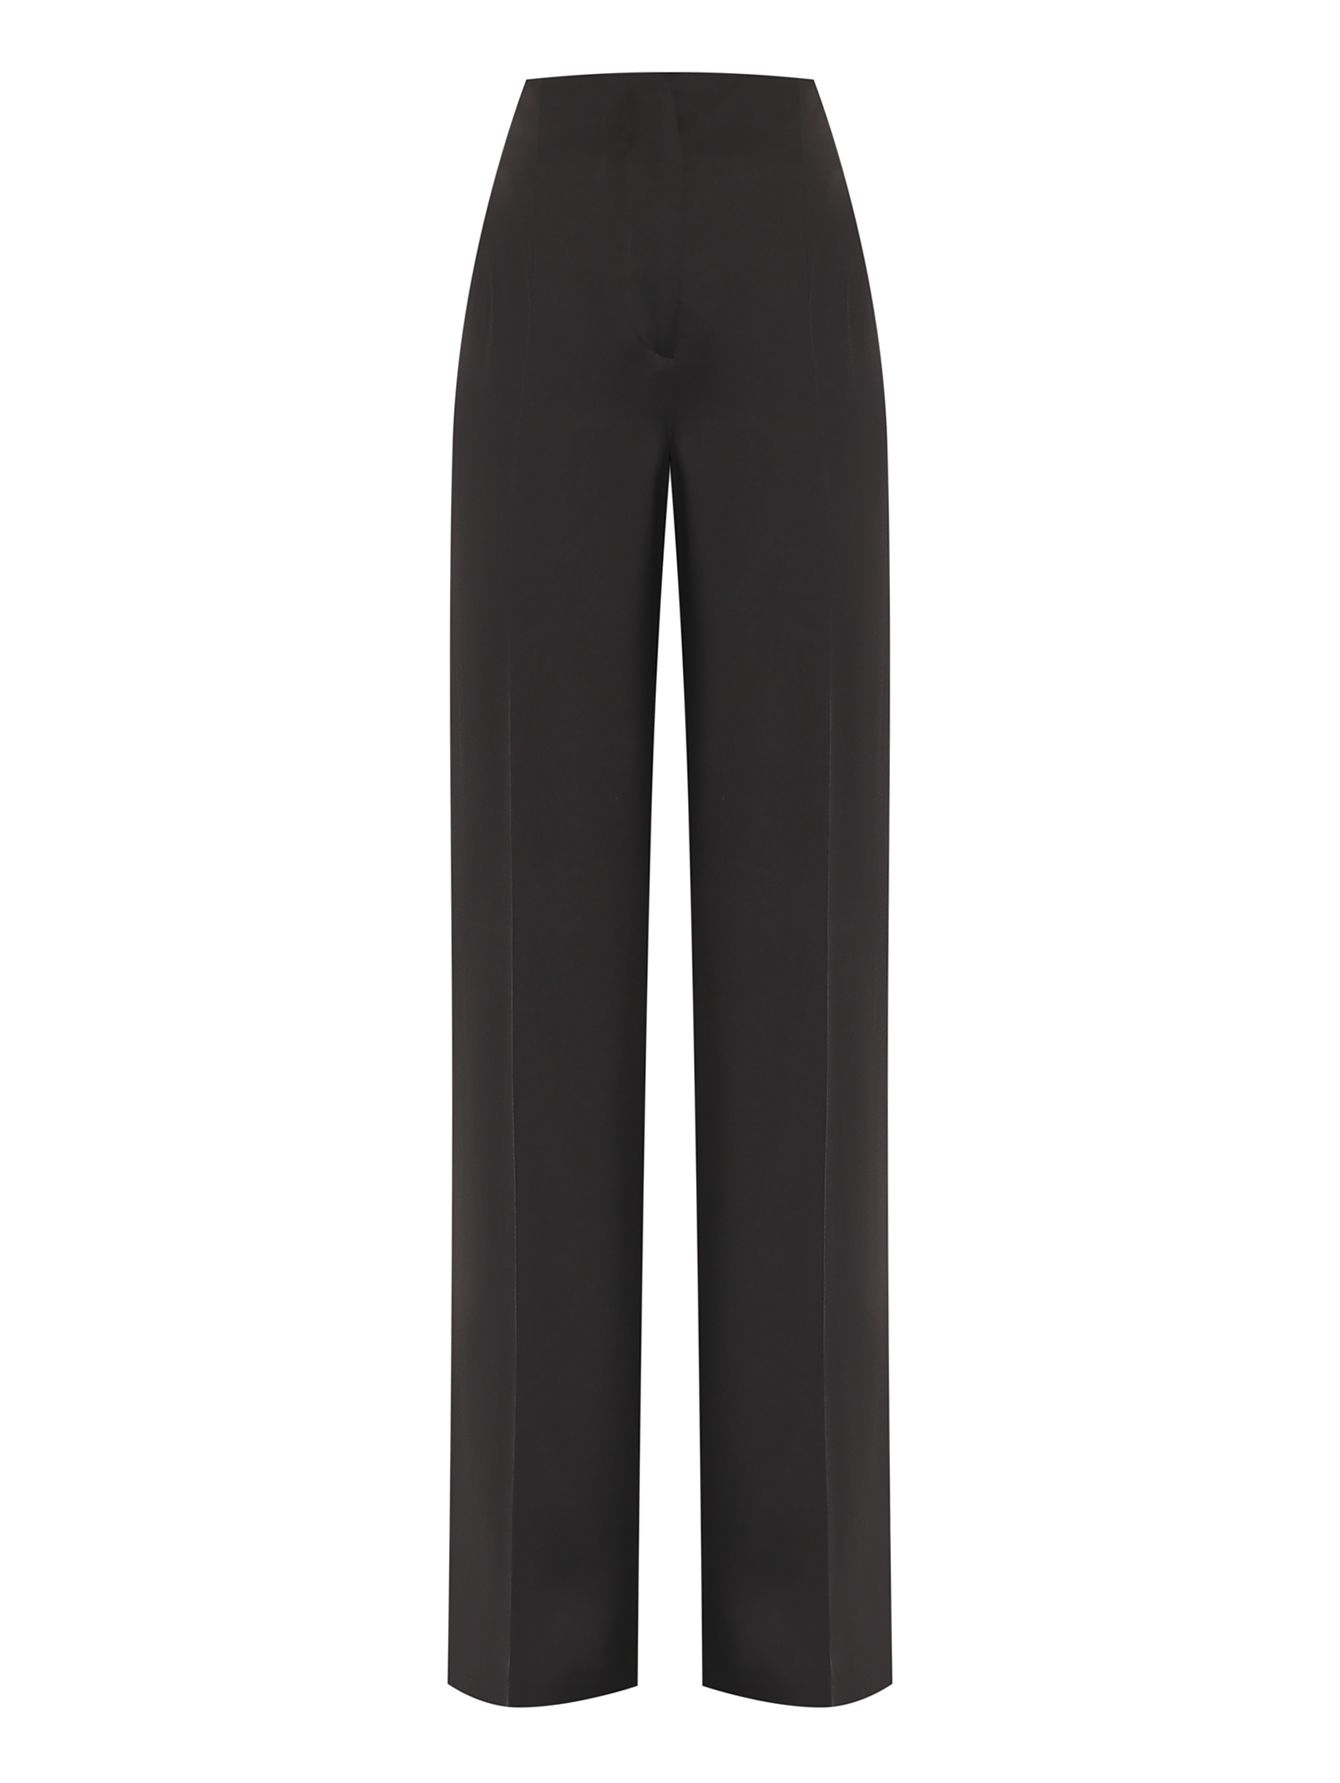 Атласные широкие брюки на высокой посадке Alberta Ferretti черные (701071)купить по цене 76 750 руб. в интернет-магазине ГУМ